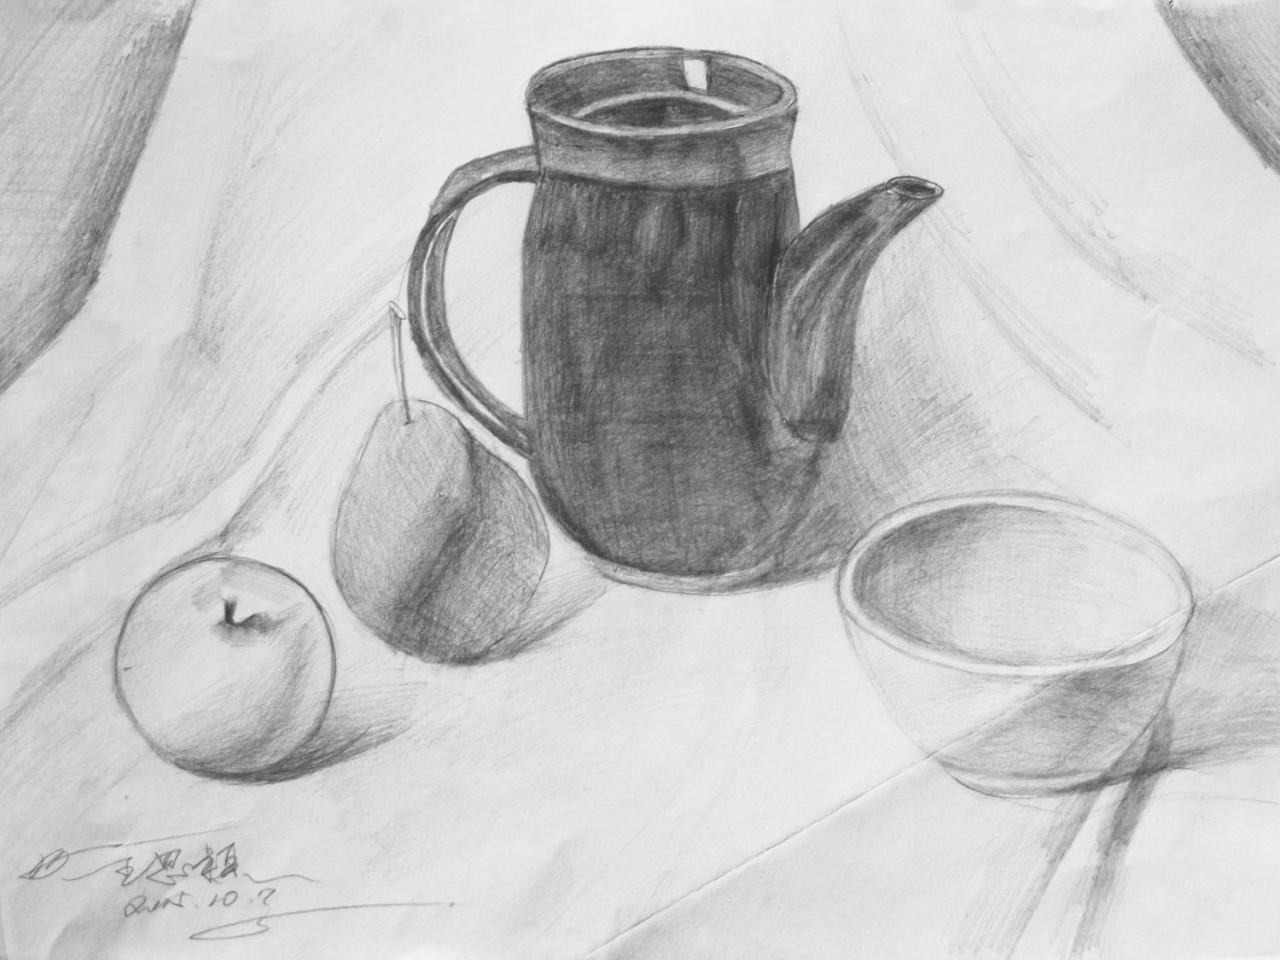 茶壶、梨子、苹果、碗 静物素描 王思颖画